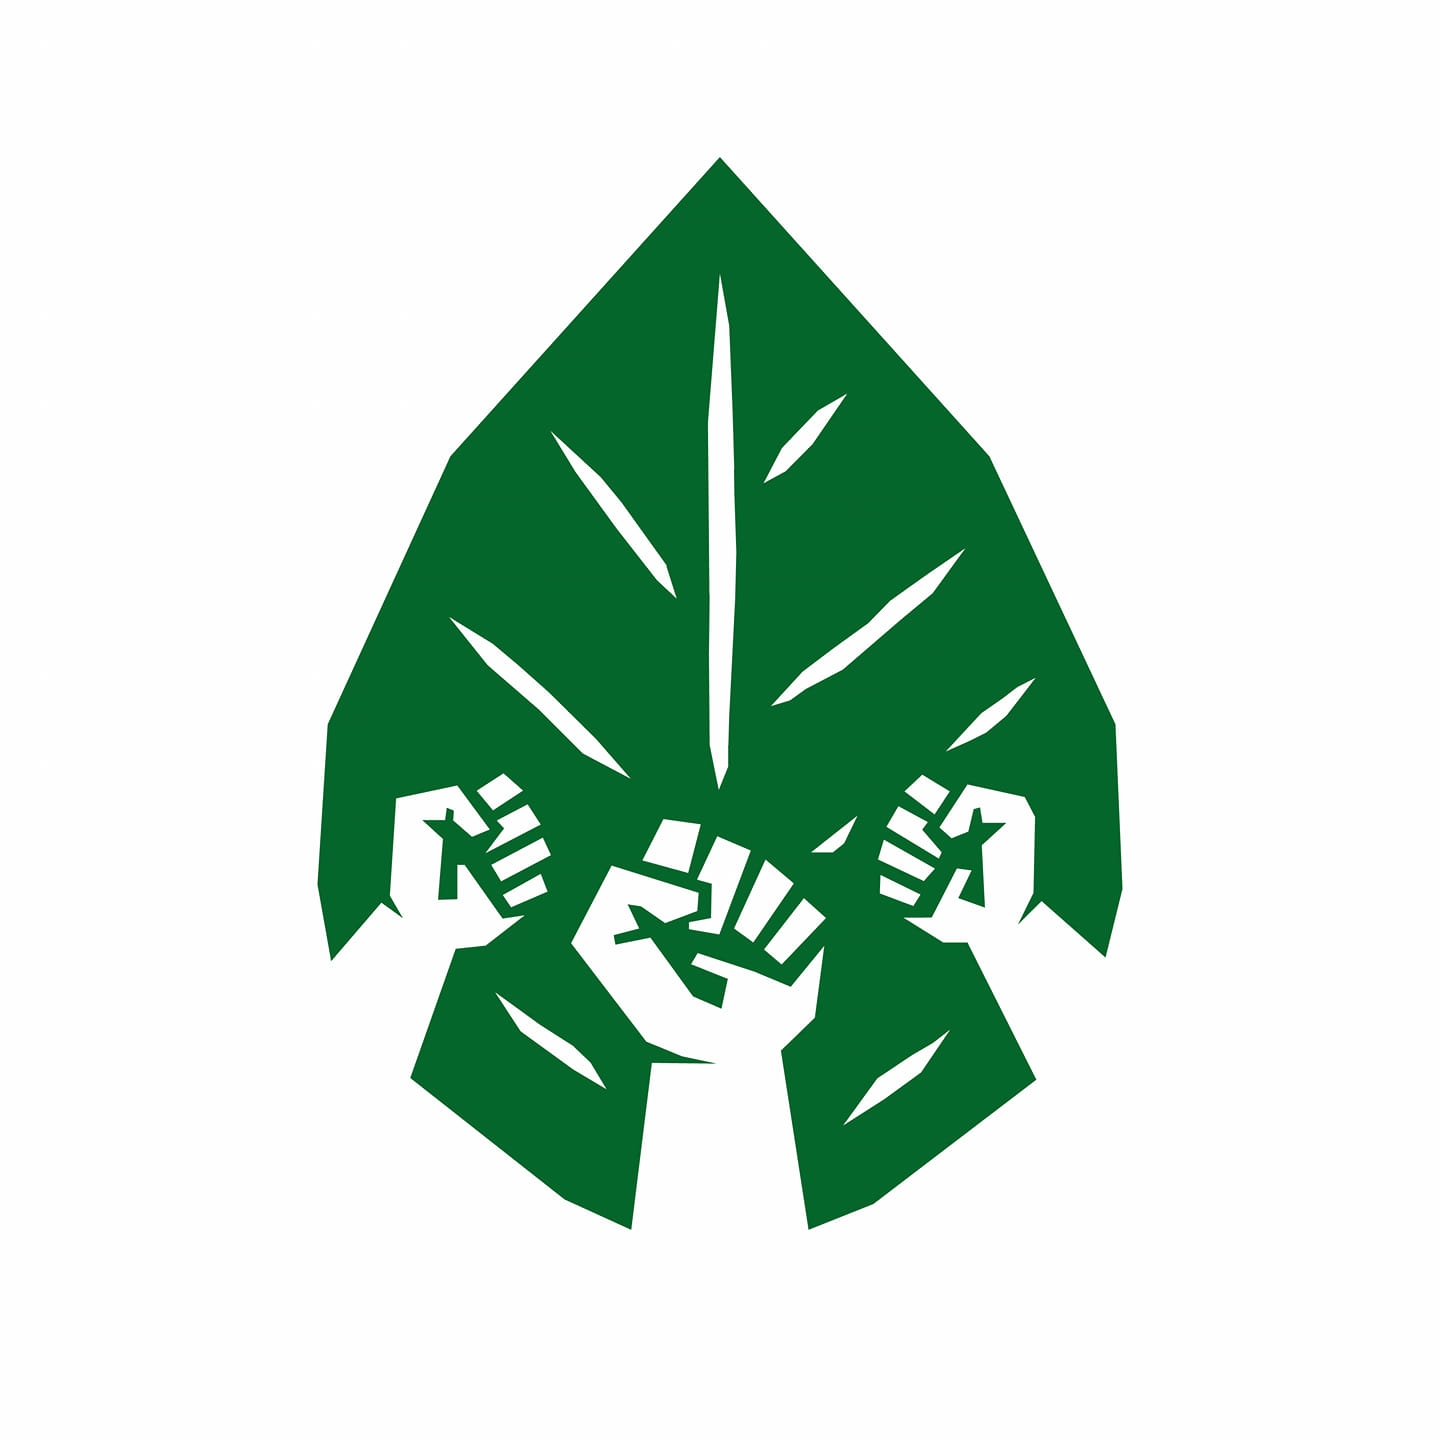 Mladi za podnebno pravičnost logo